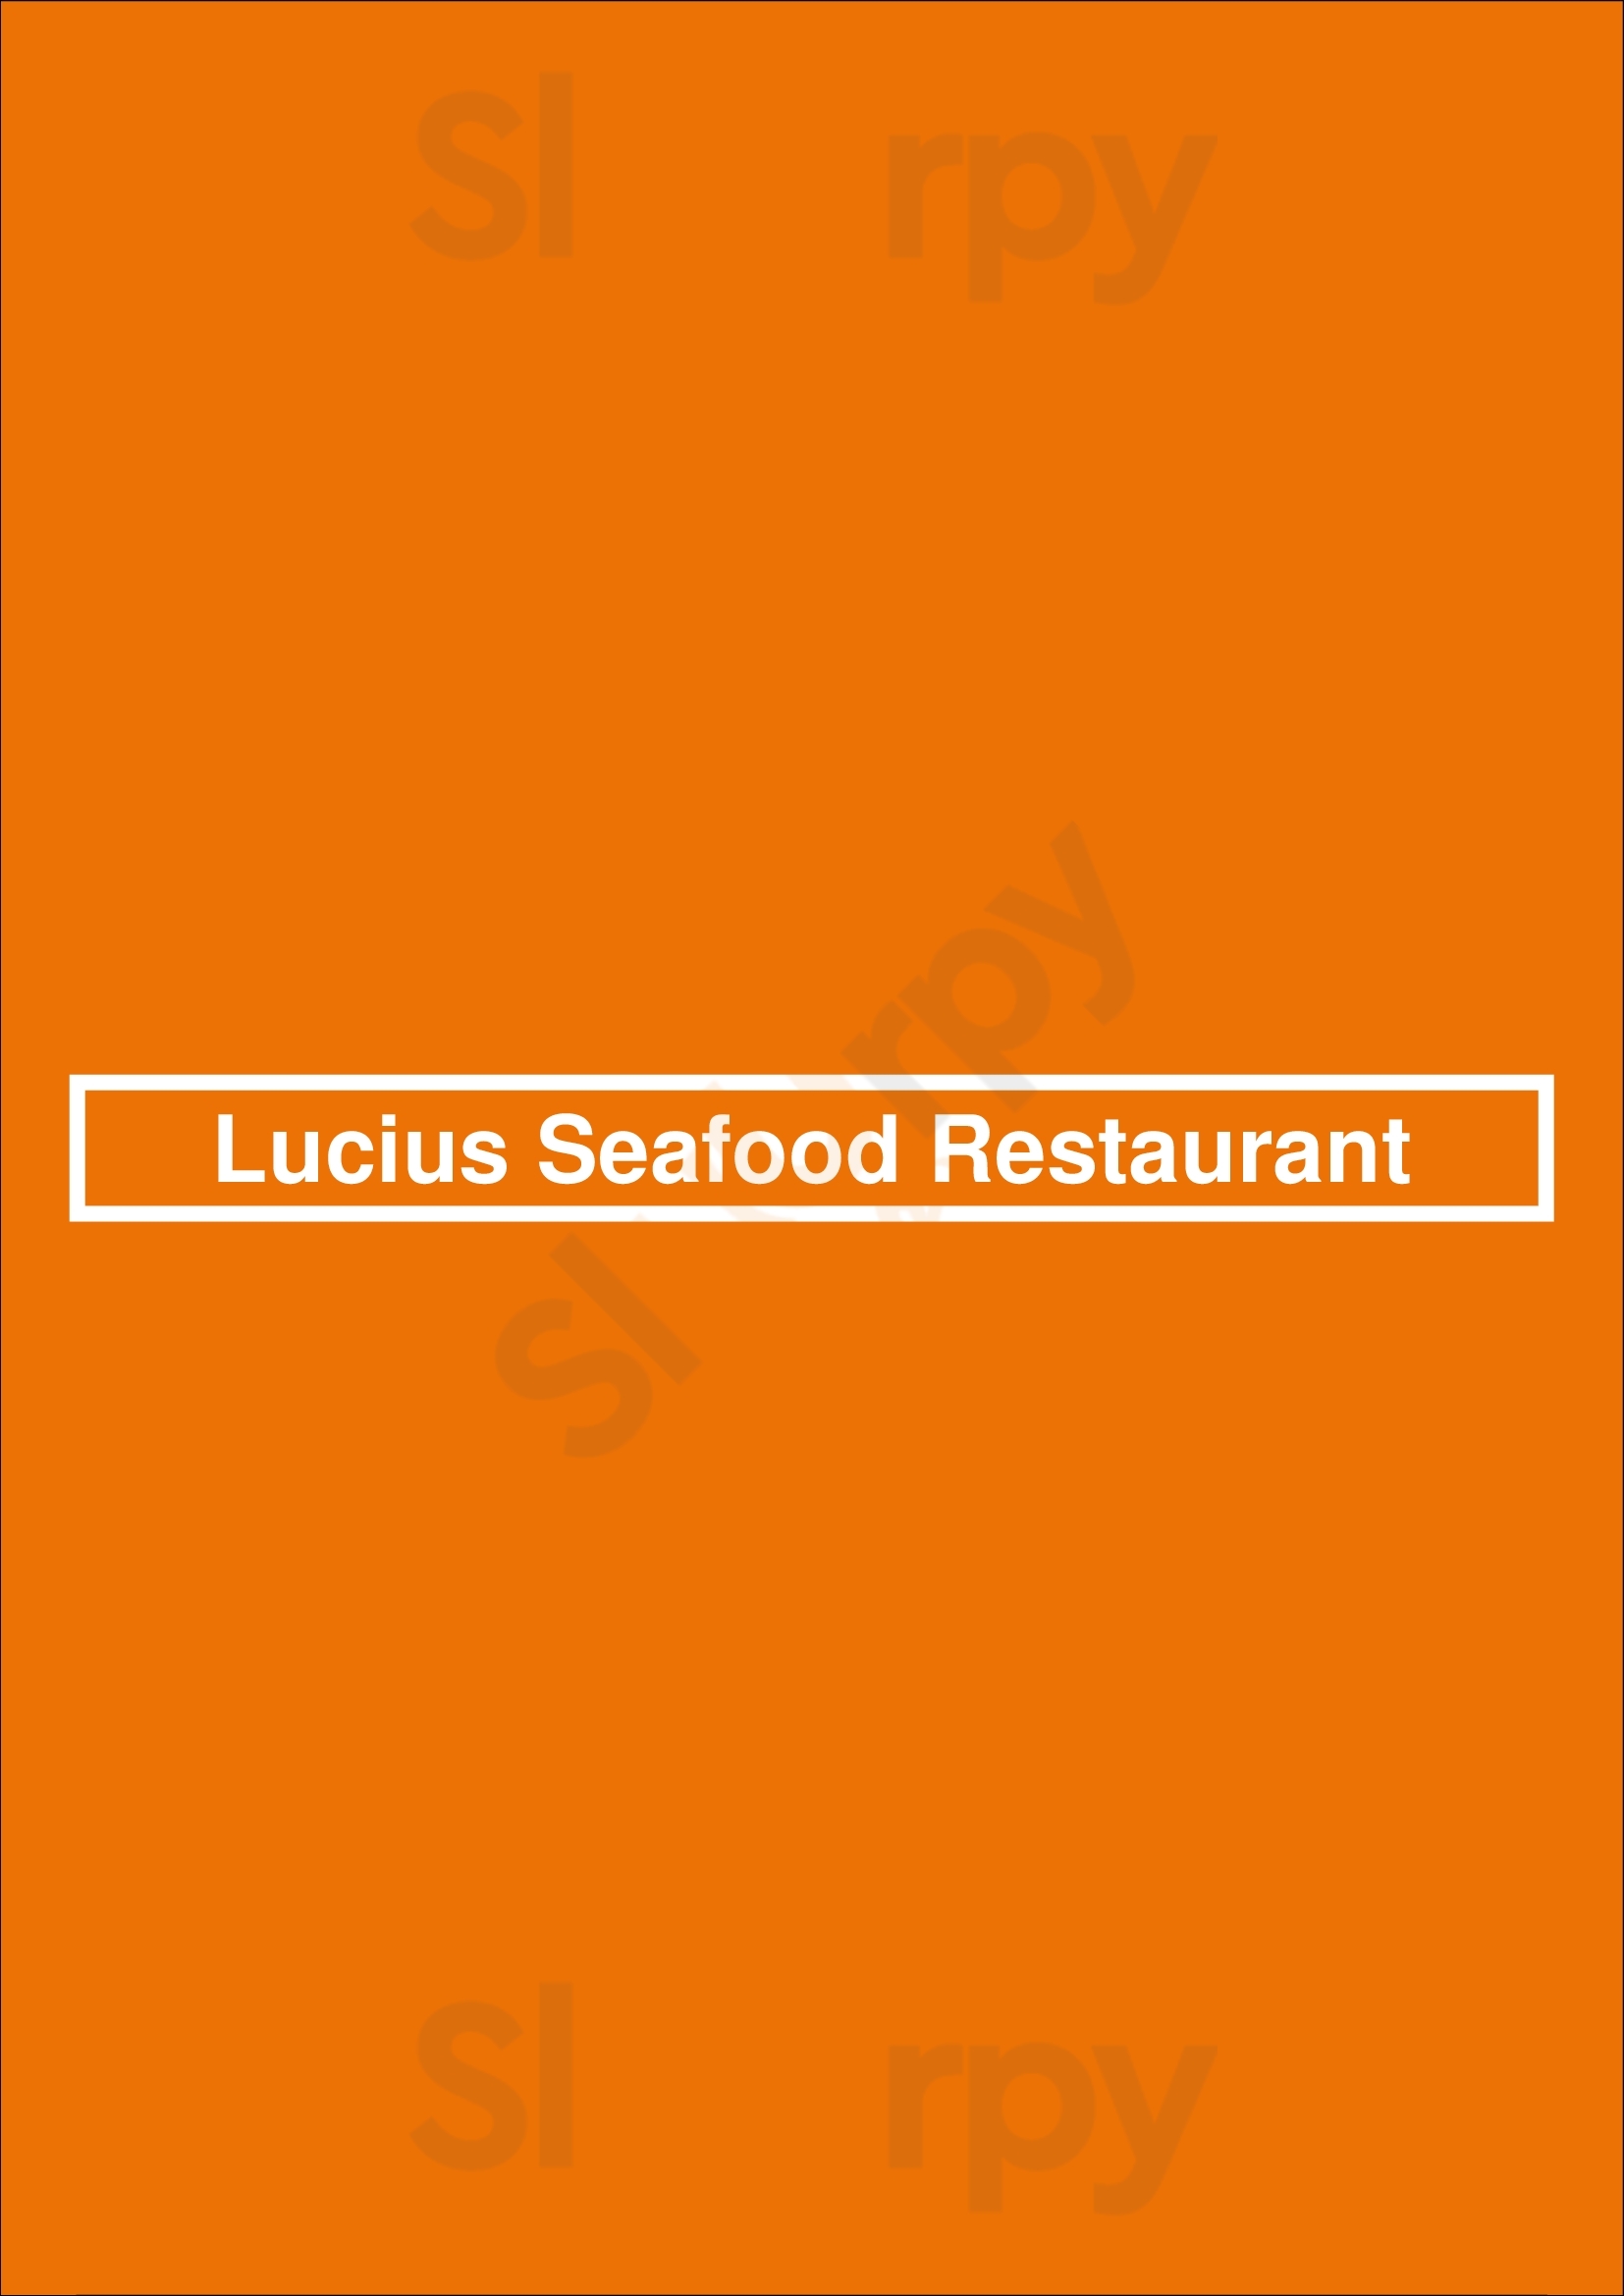 Lucius Seafood Restaurant Amsterdam Menu - 1